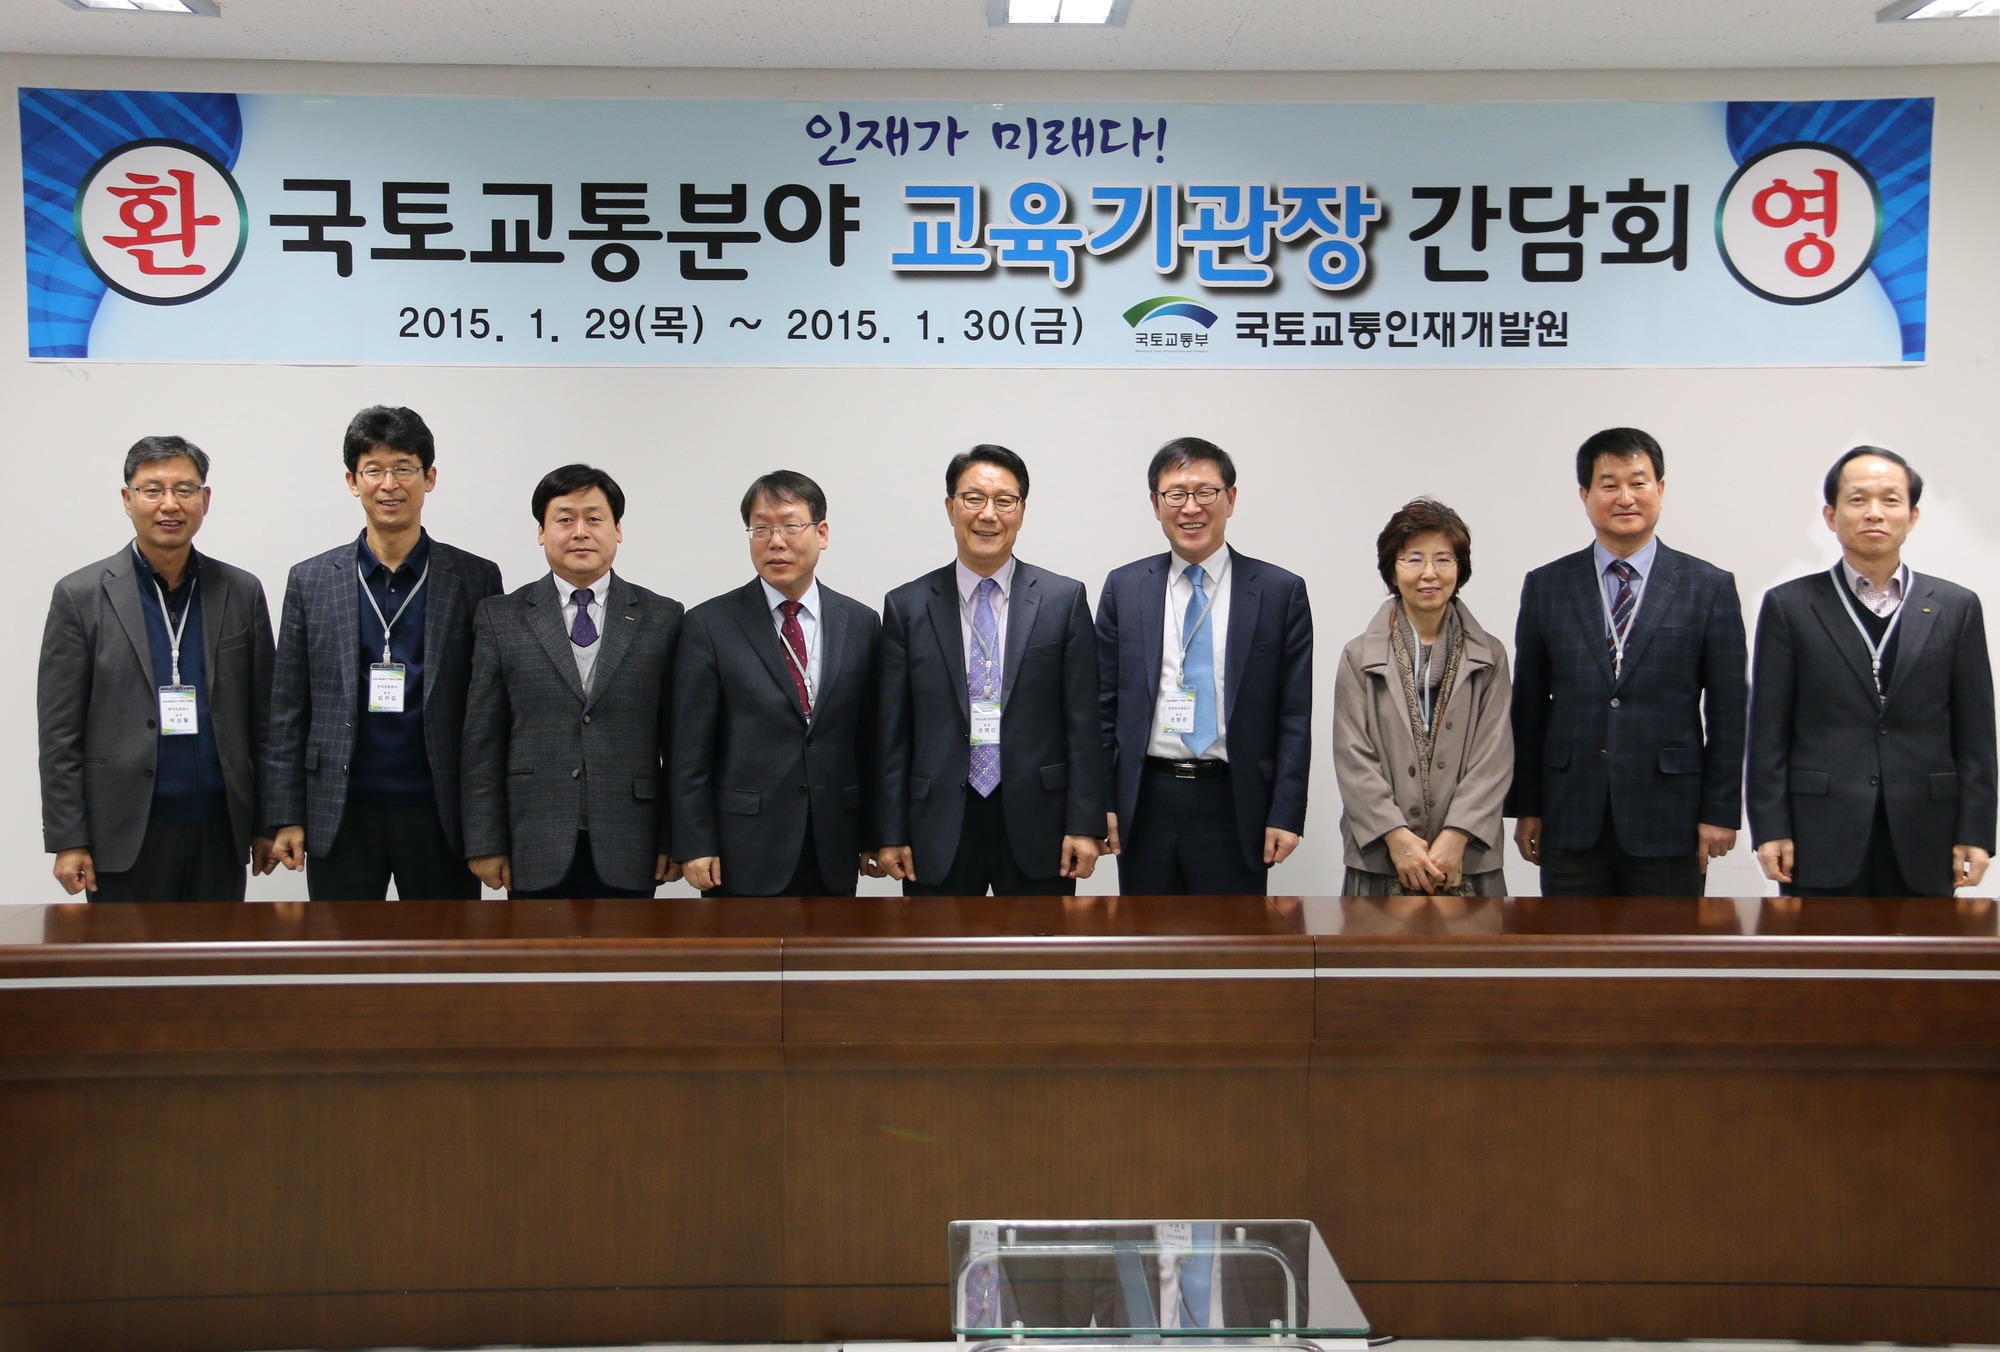 국토교통교육기관 간담회 개최 #1(2015-1-30)